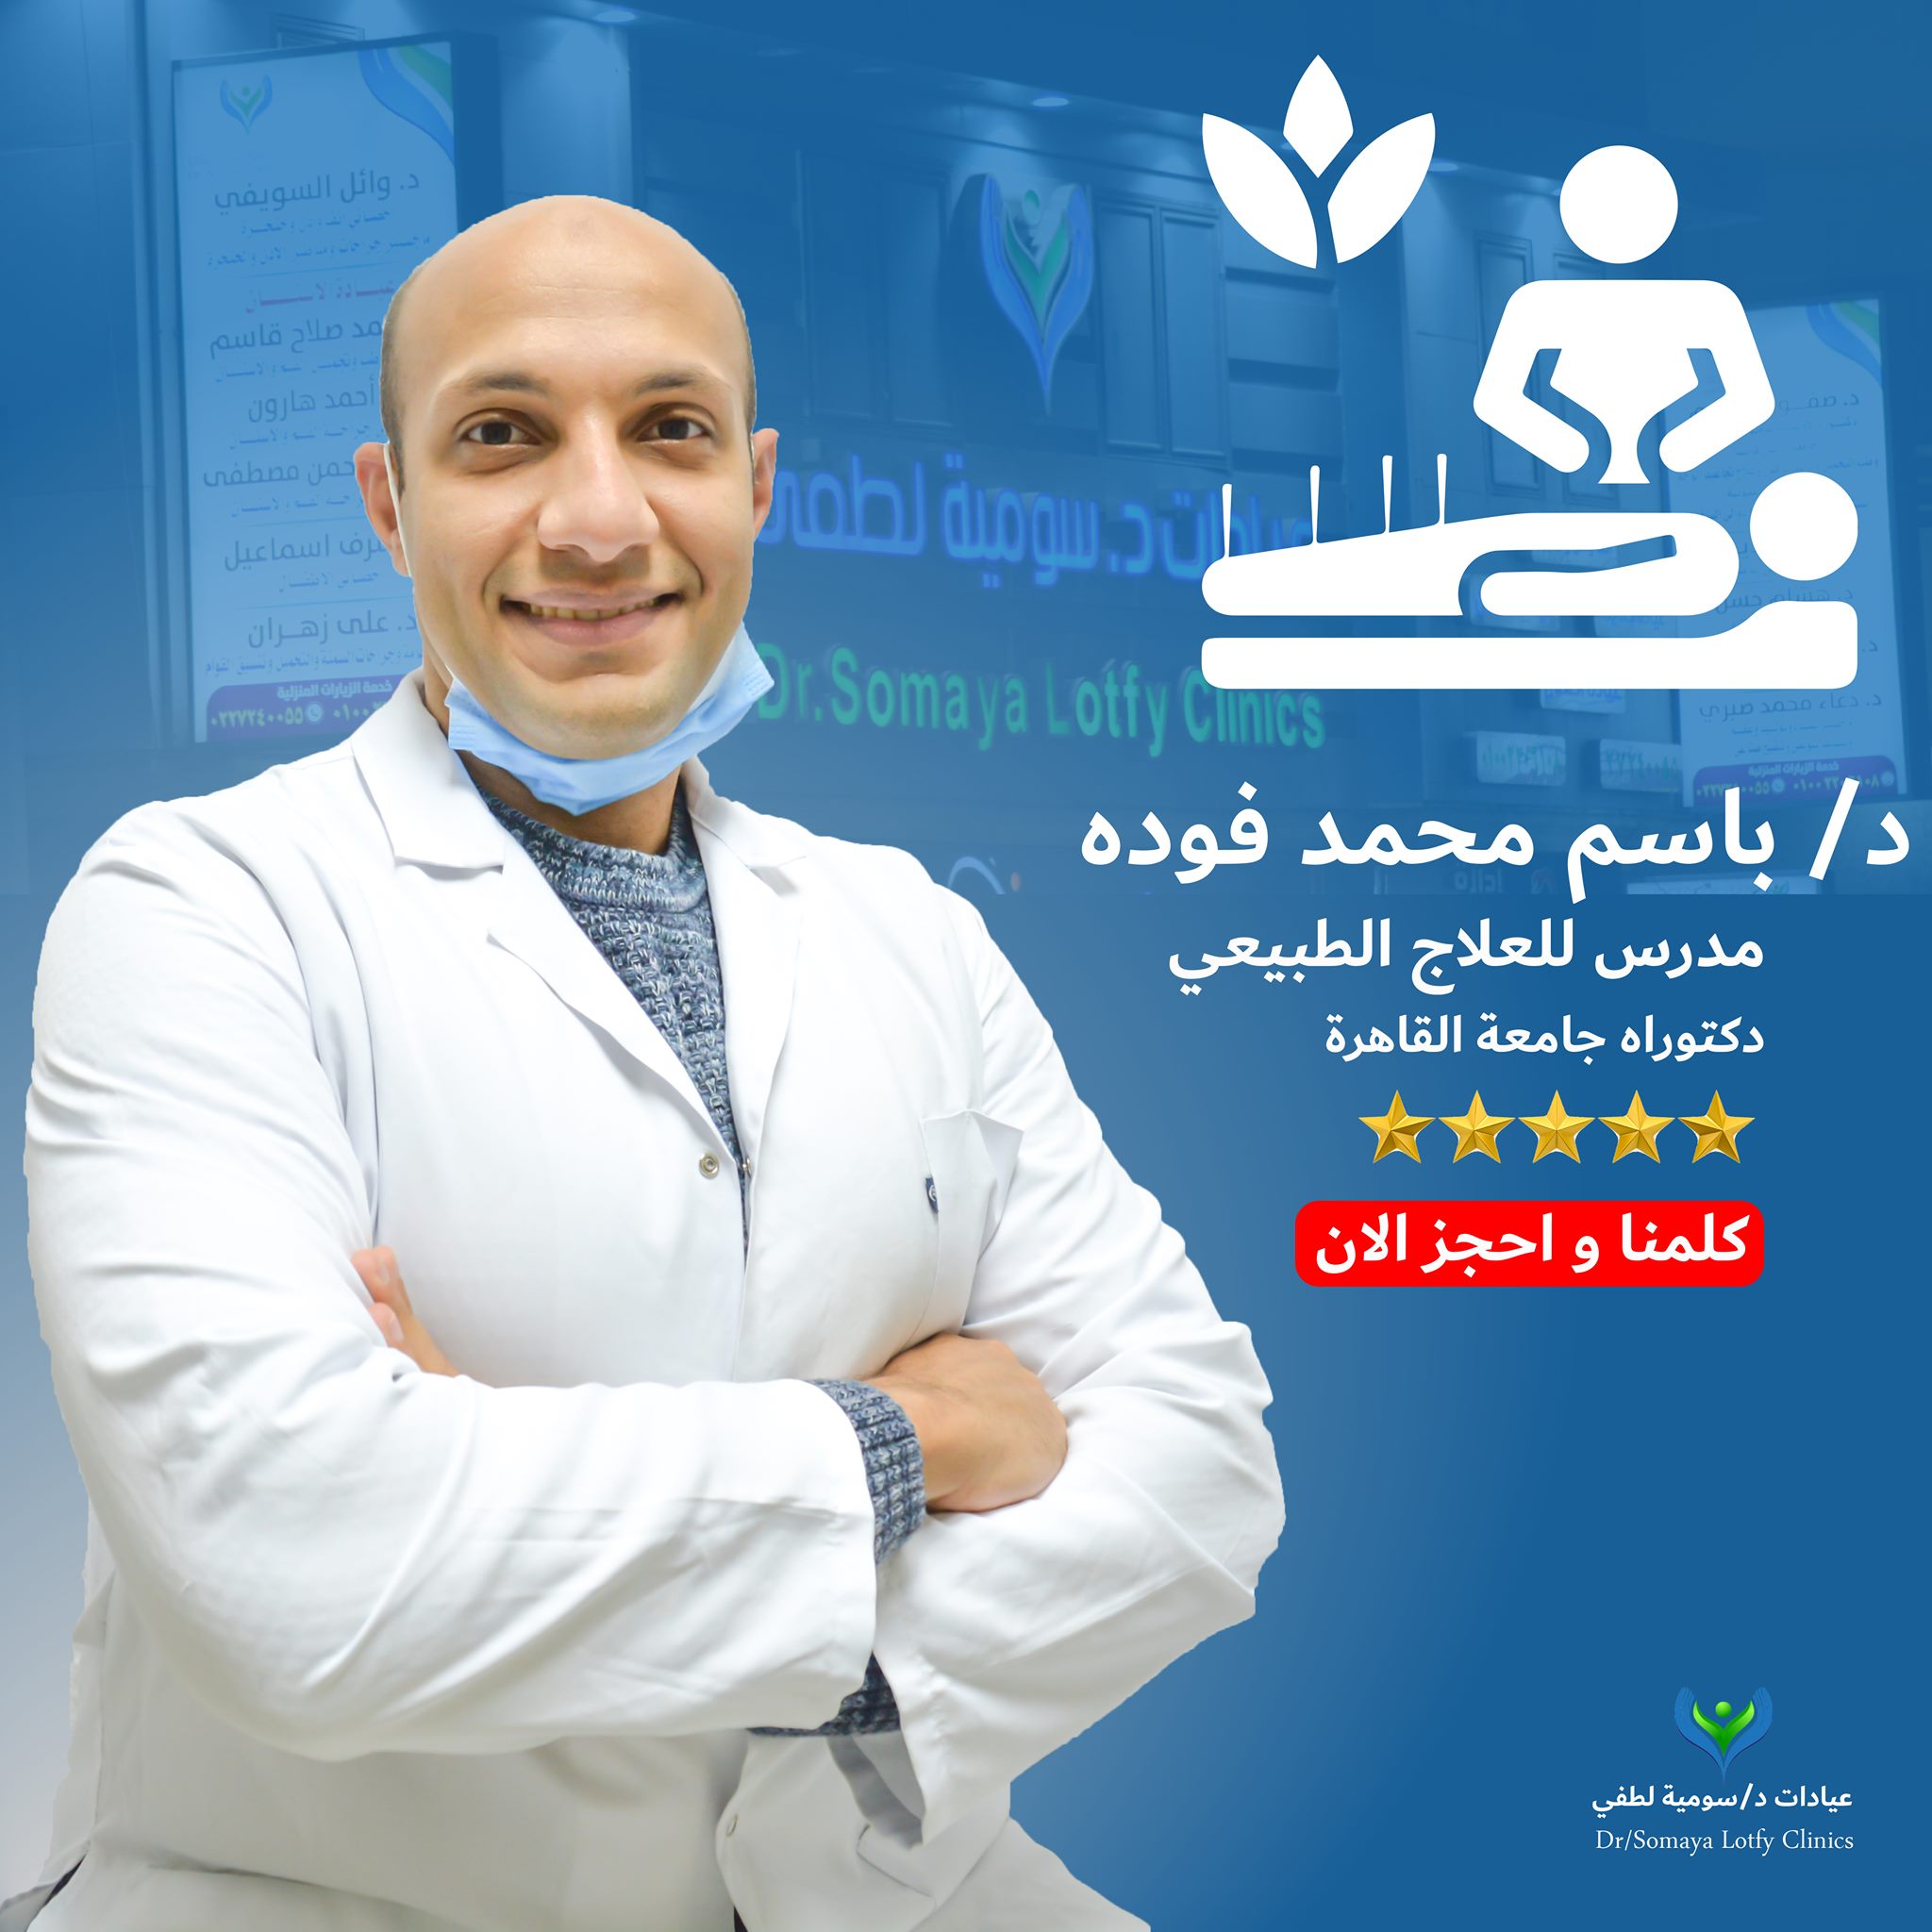 Dr. Bassem Mohamed Fouda